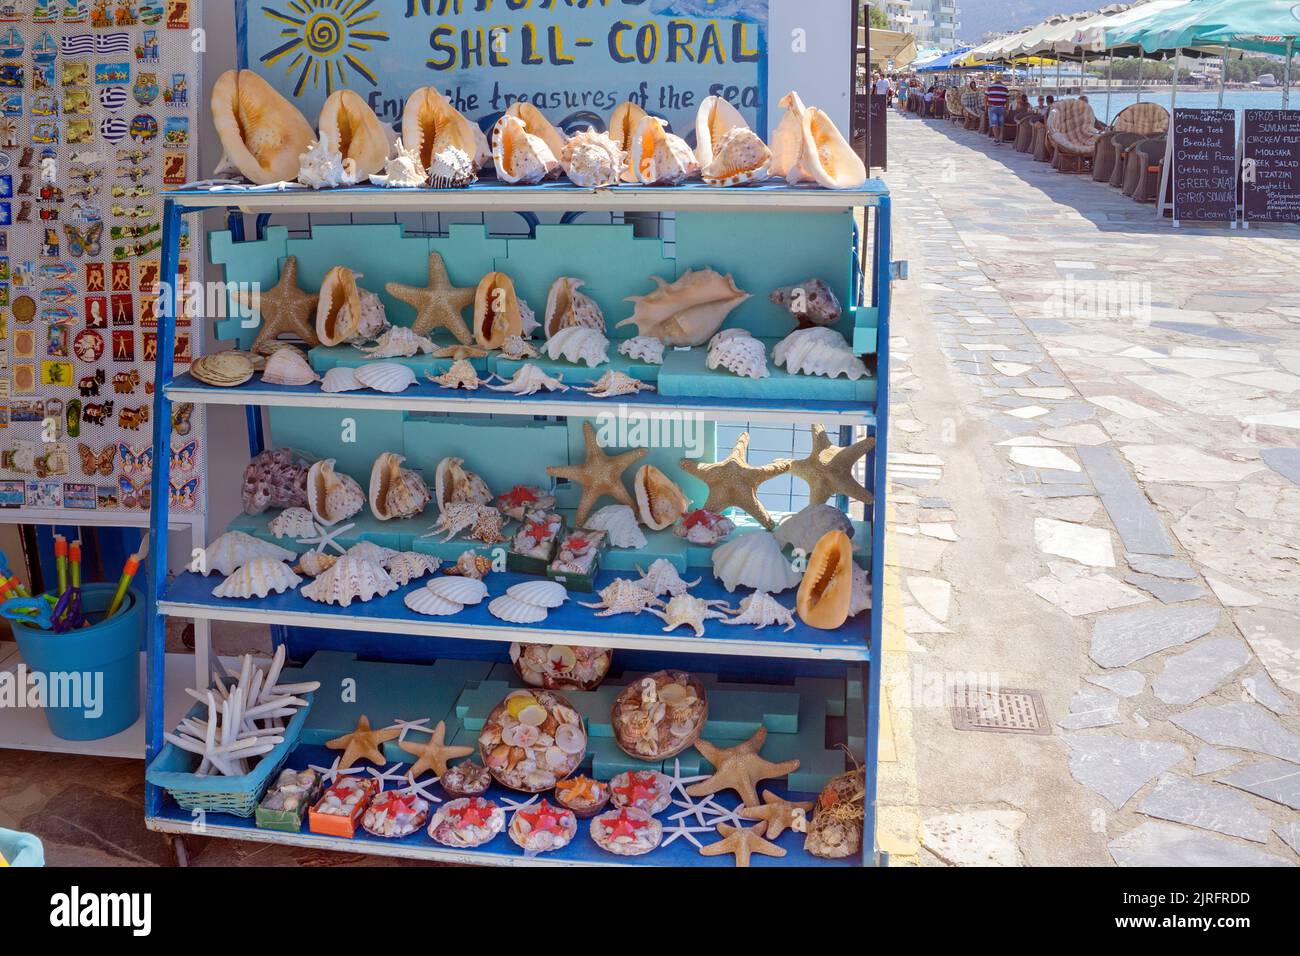 Verkauf von toten Meerestieren in einem Touristentshop auf der Promenade von Ierapetra, Ierapetra ist die suedlichste Stadt Griechenlands, Kreta, Griec Foto de stock